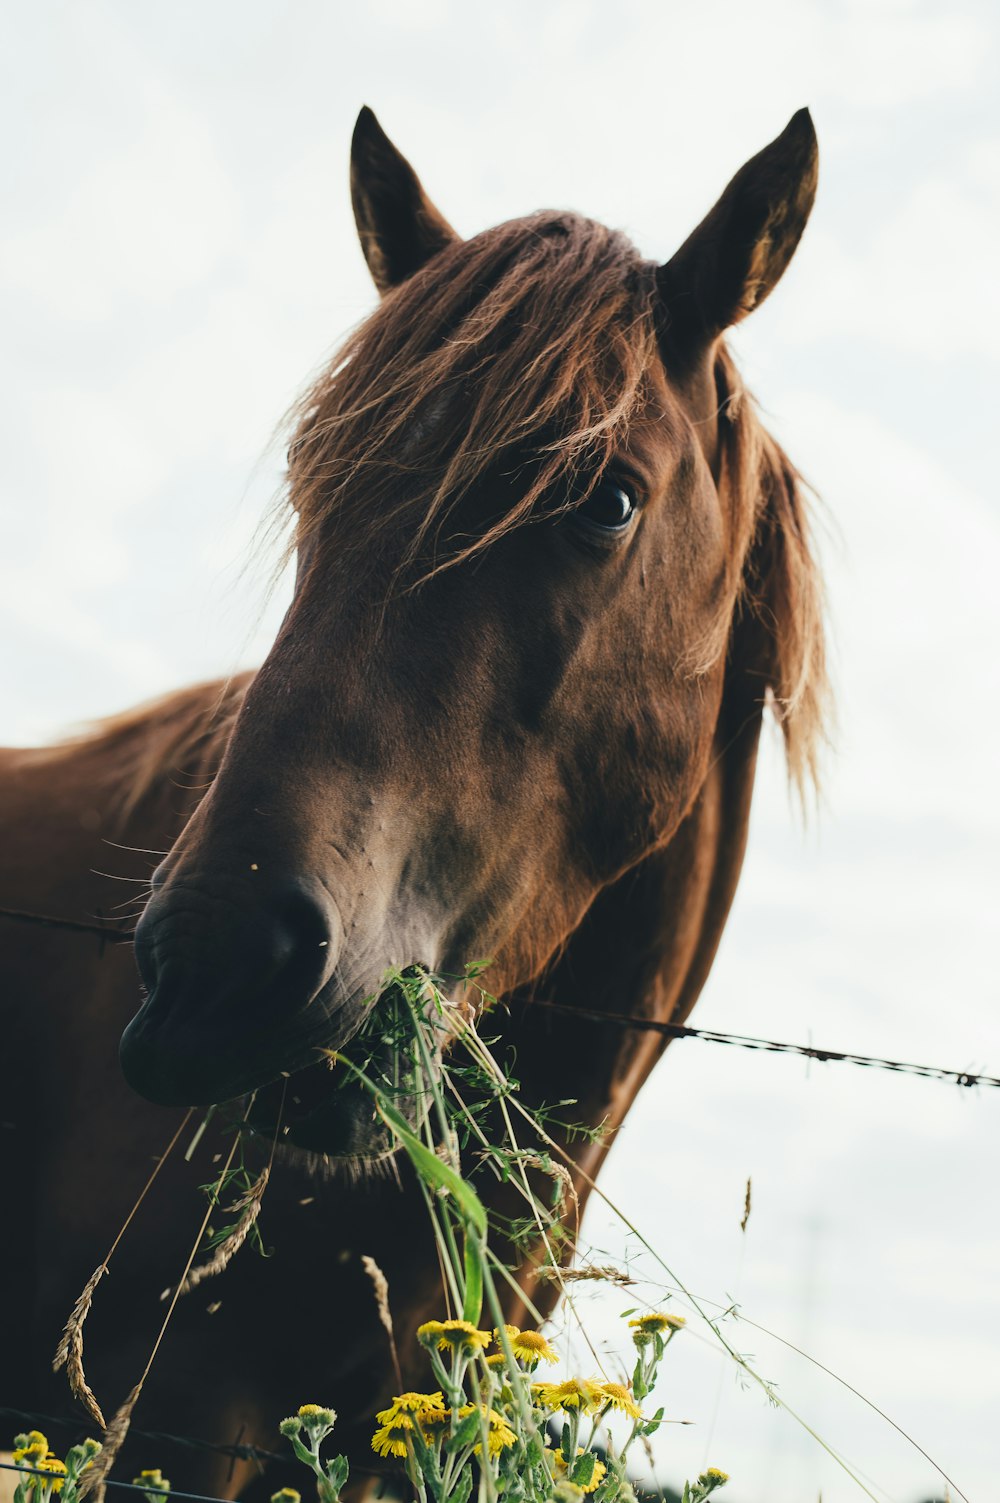 Braunes Pferd frisst Gras bei bewölktem Himmel